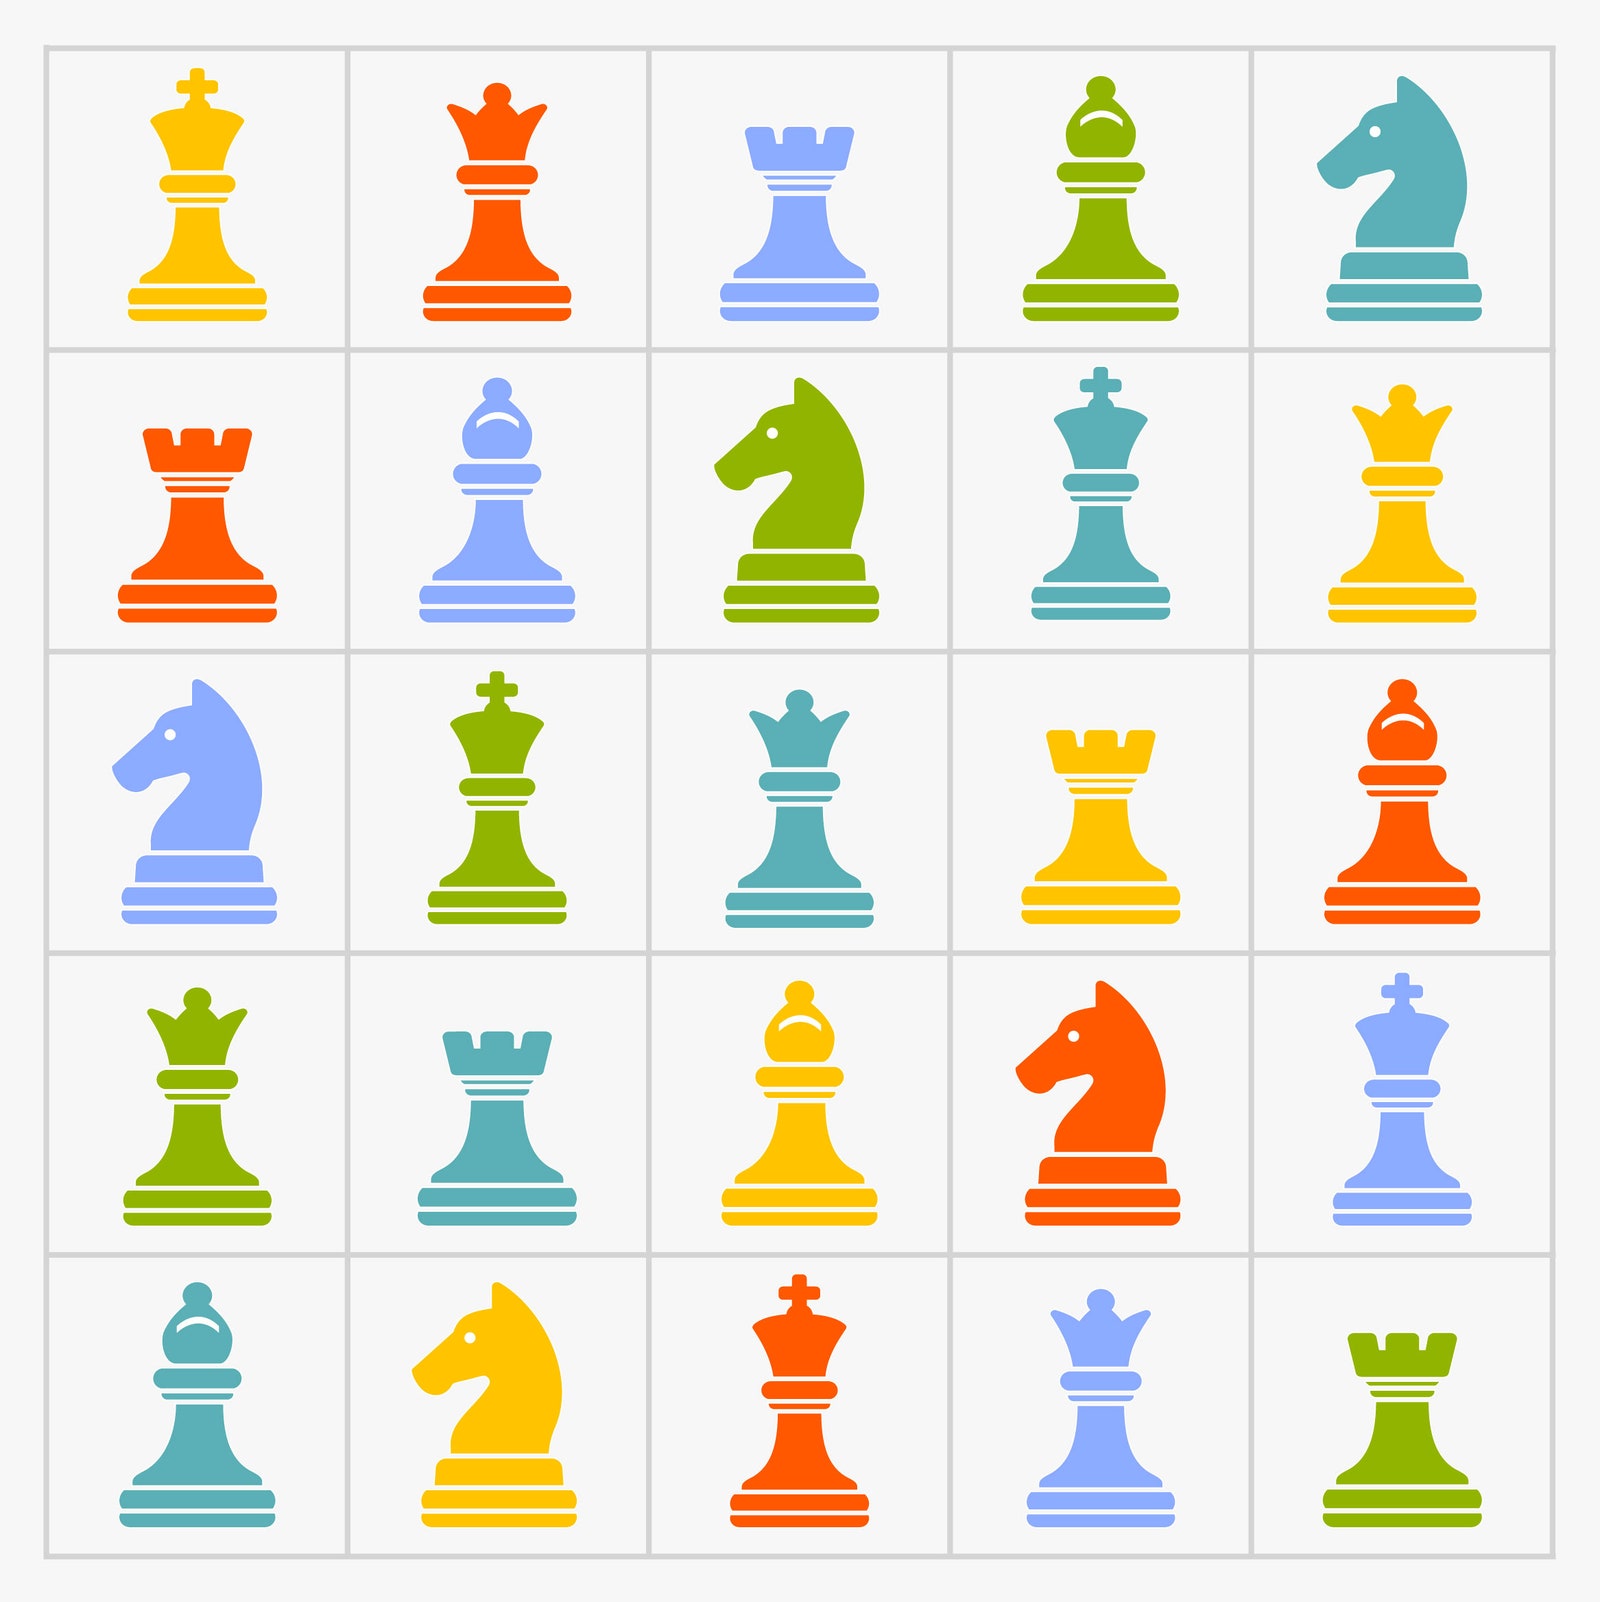 rejillas con piezas de ajedrez de colores en cada cuadrado